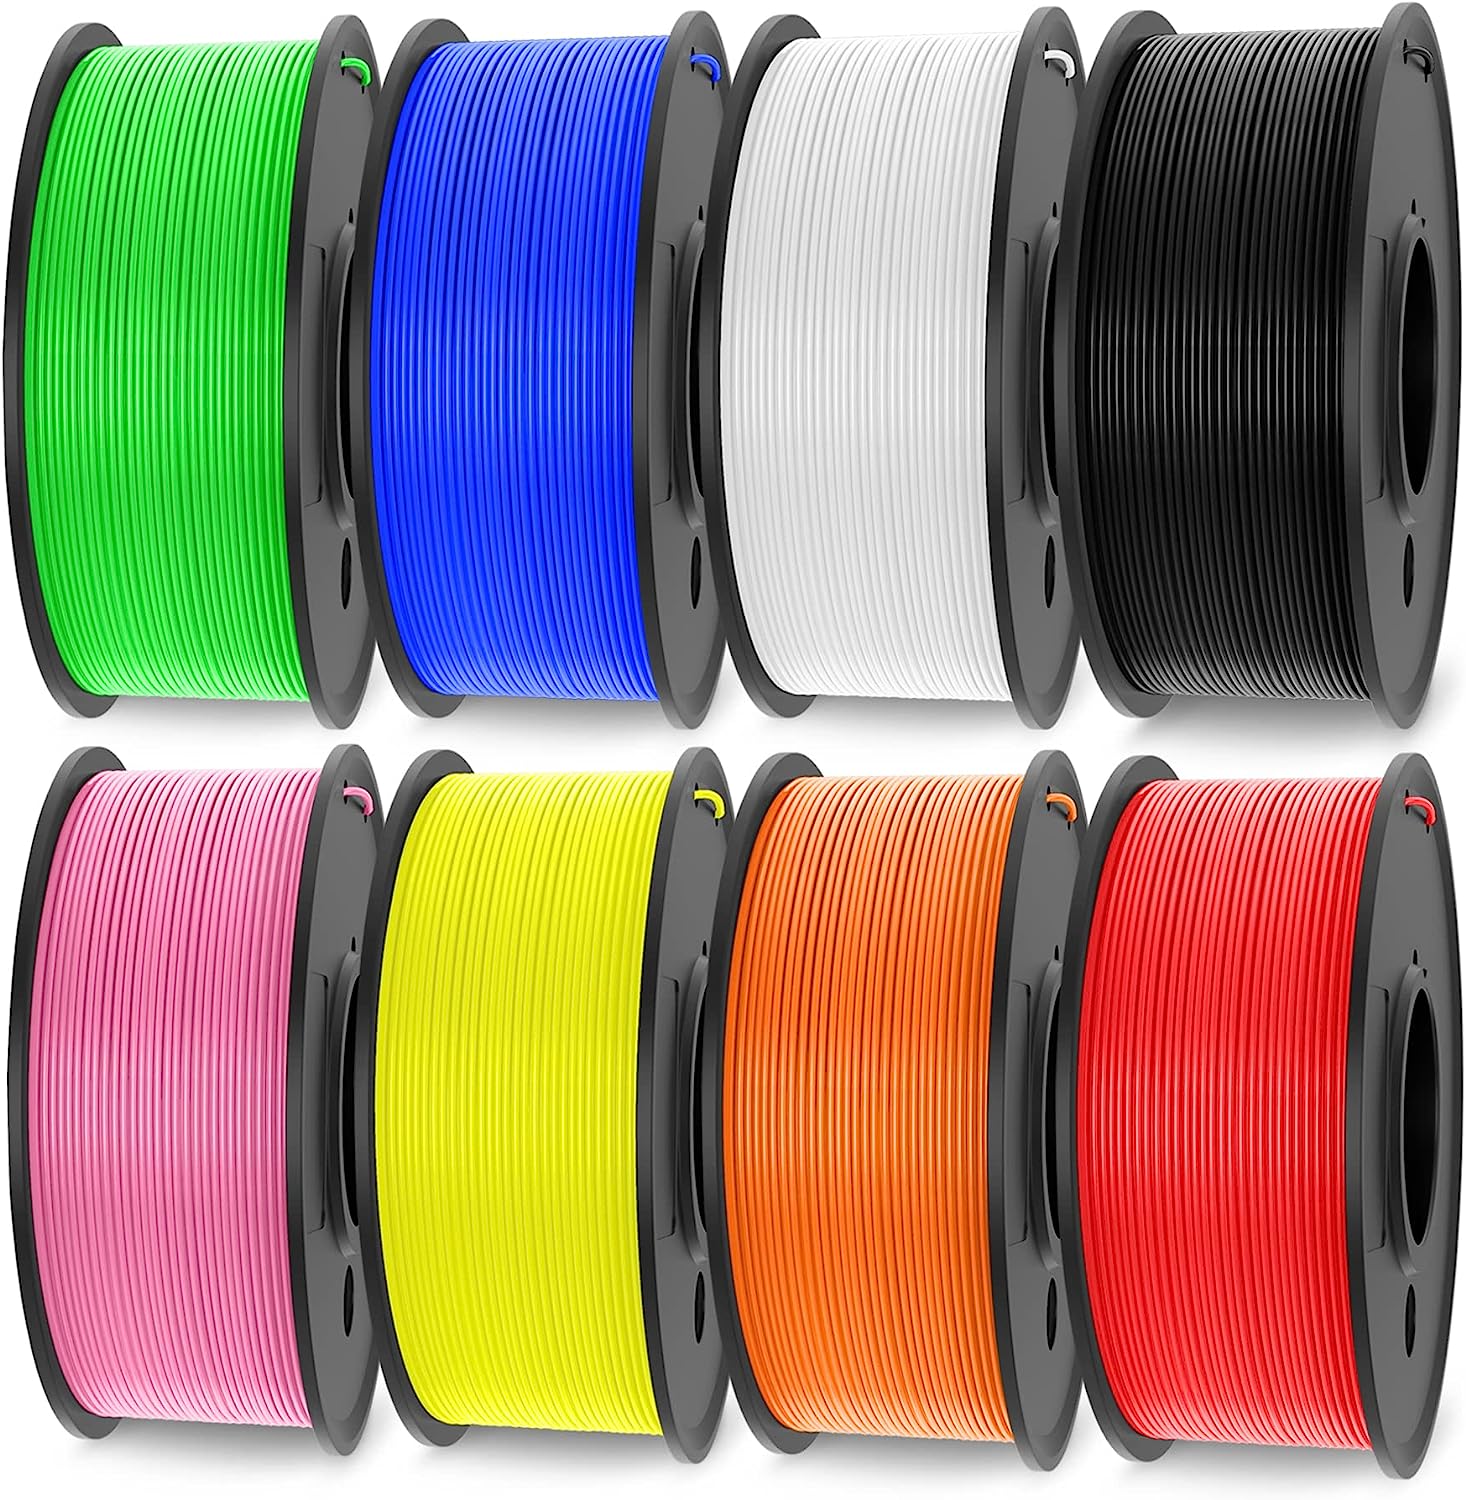 SUNLU 3D Printer Filament Bundle Multicolor, Neatly [...]